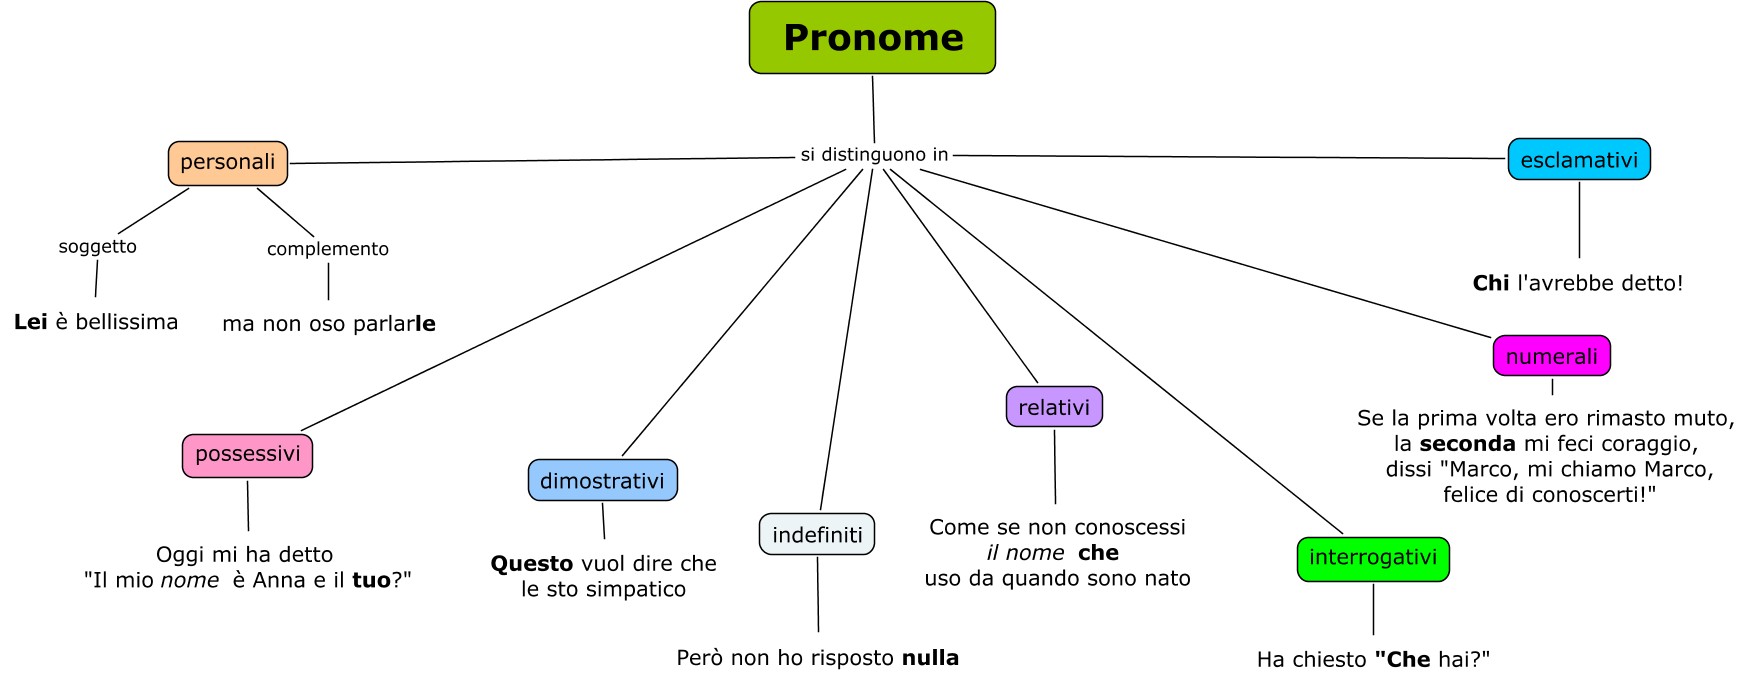 Pronome - classificazione